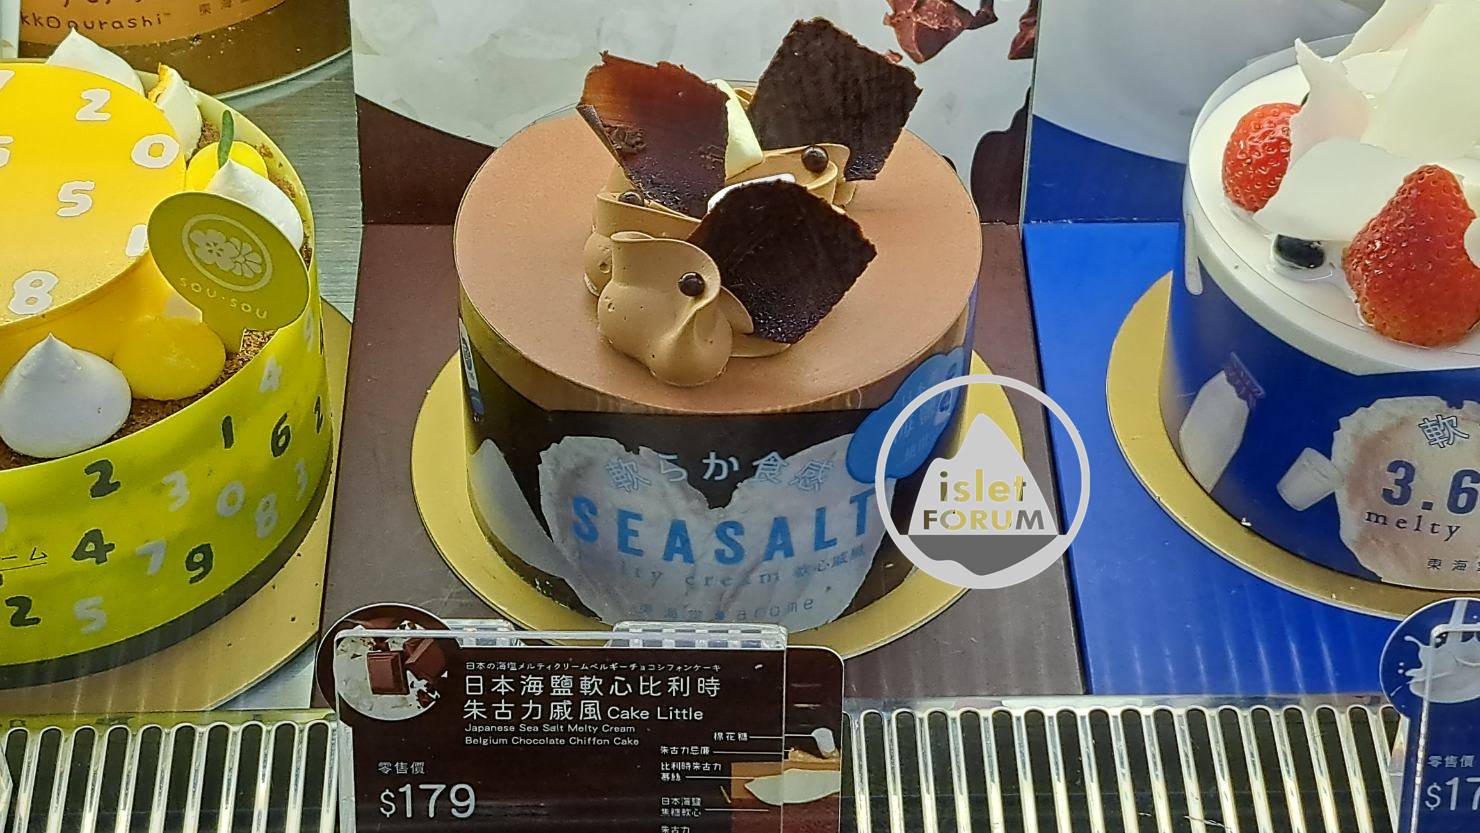 朱古力蛋糕Chocolate cake 小島討論區，isletforum (7).jpg